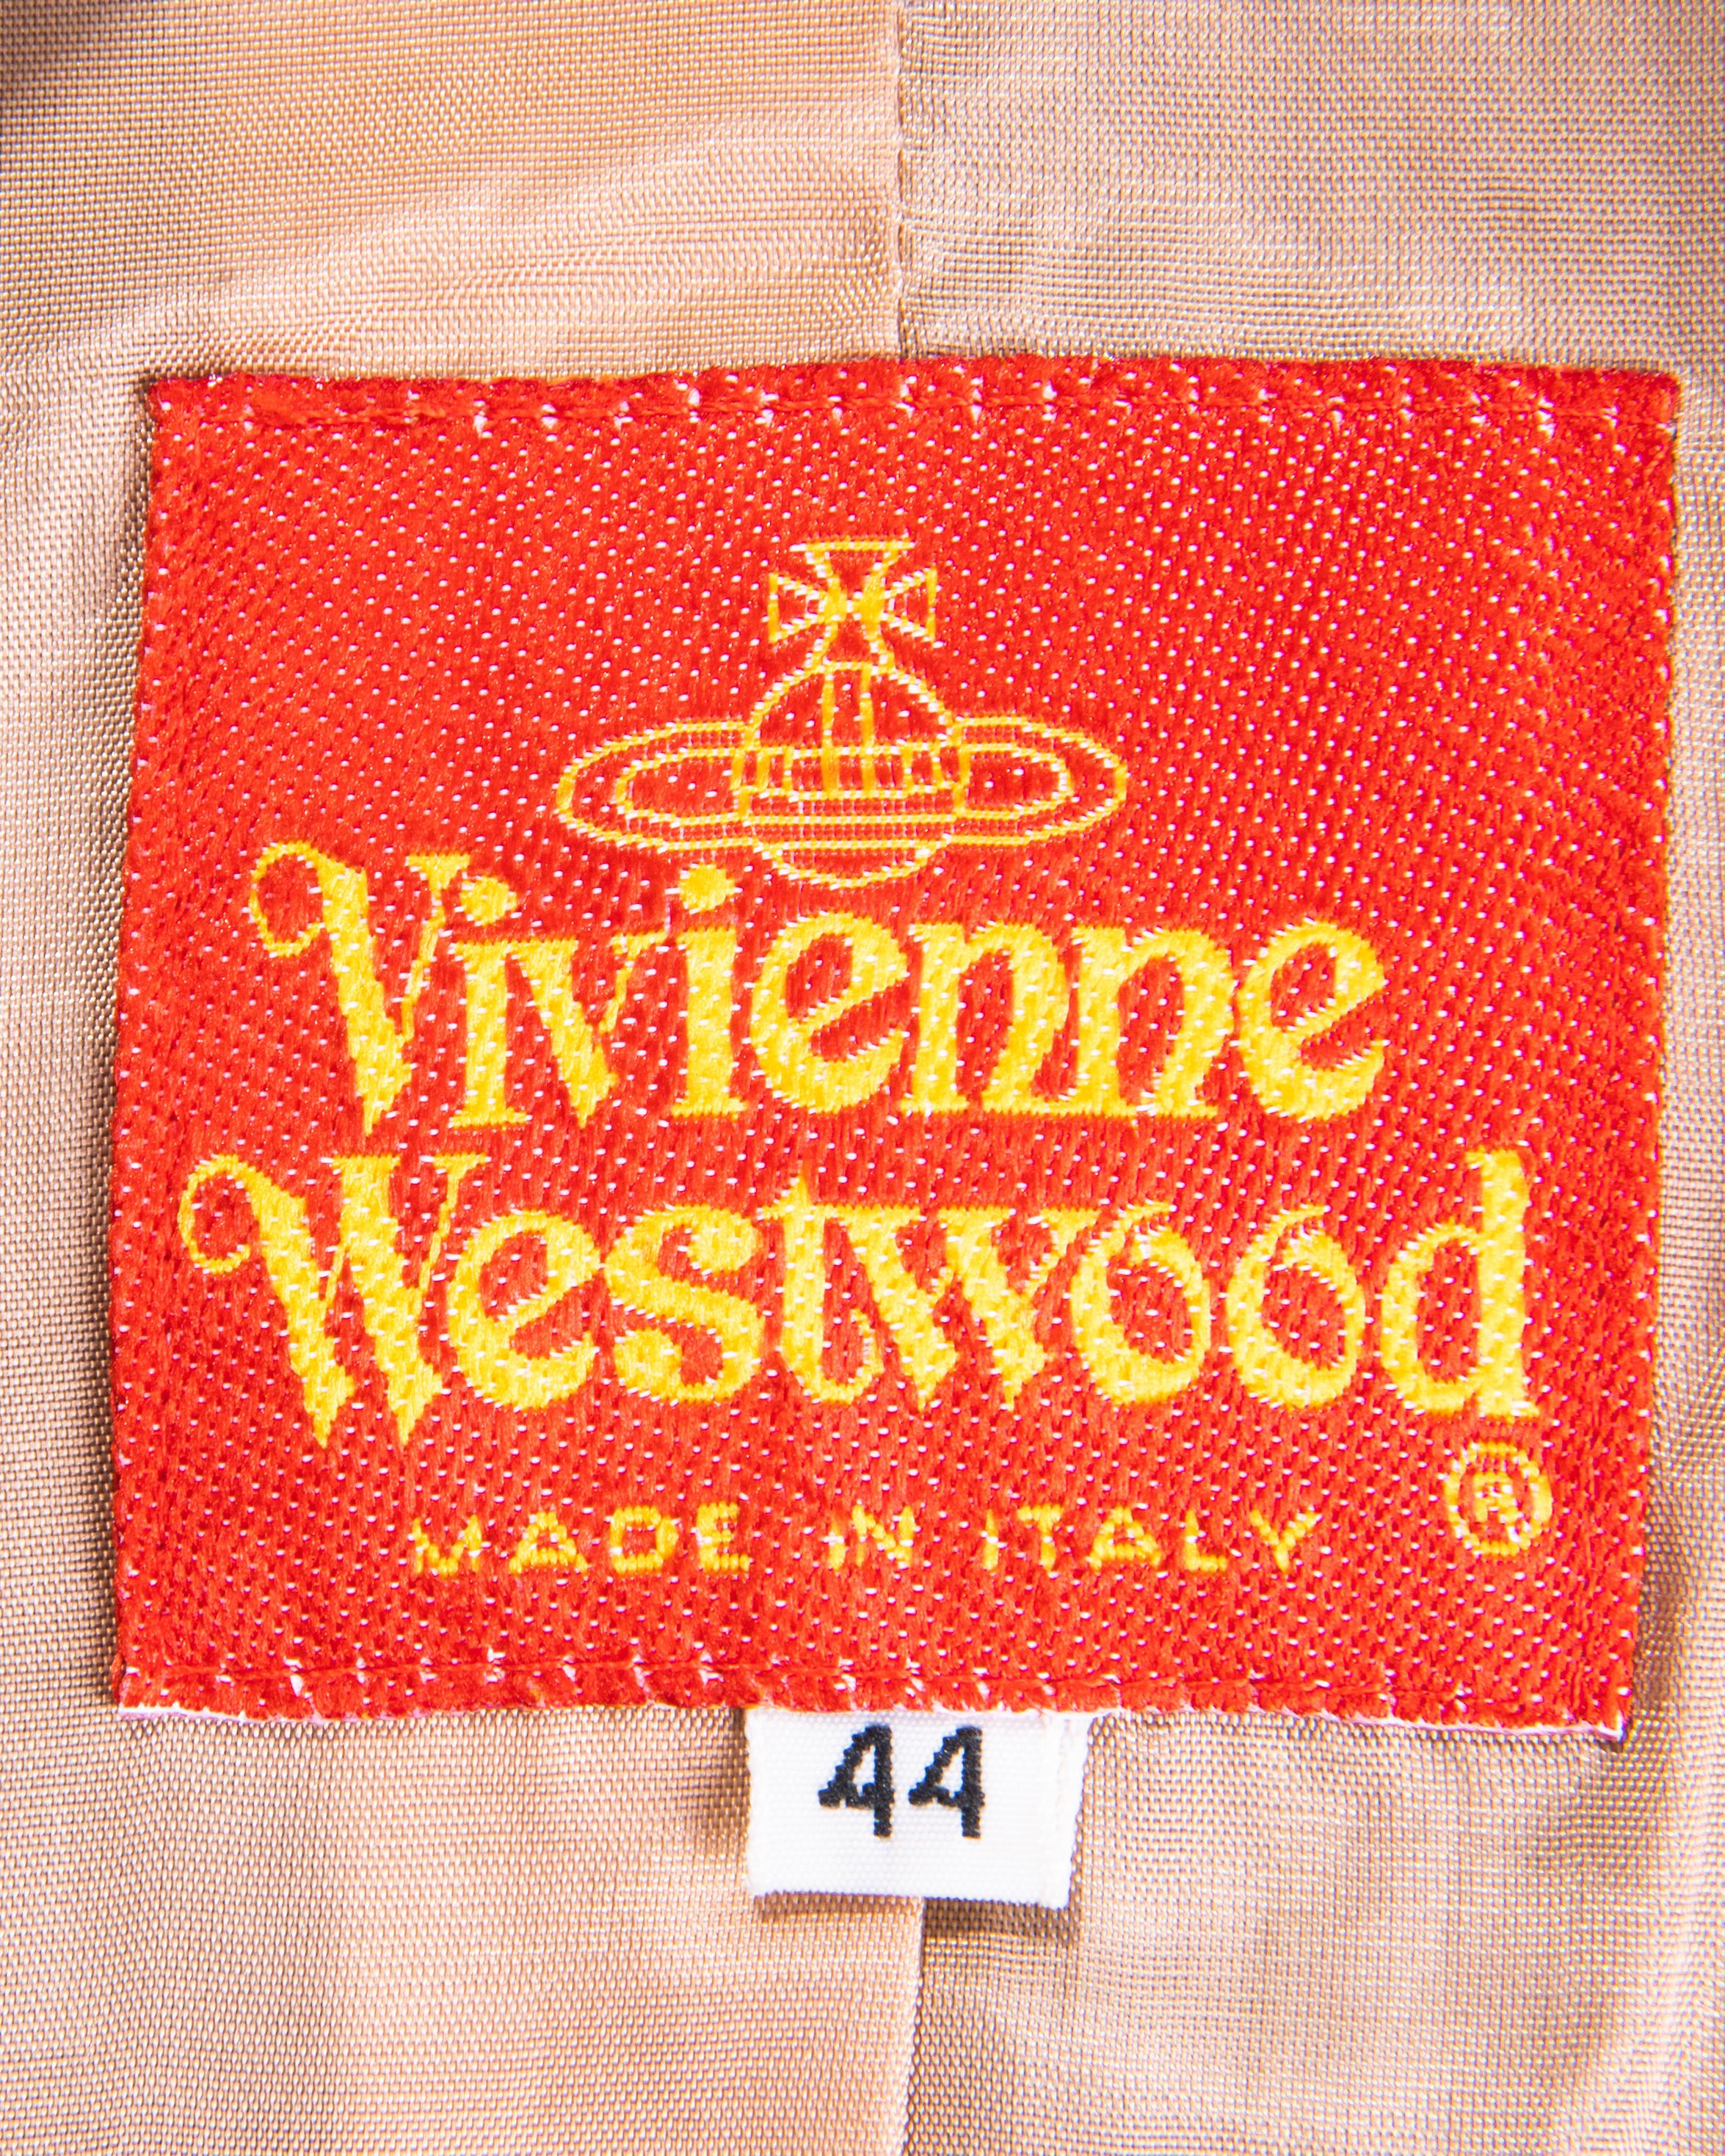 S/S 1994 Vivienne Westwood Cotton Striped Skirt Suit Set 13